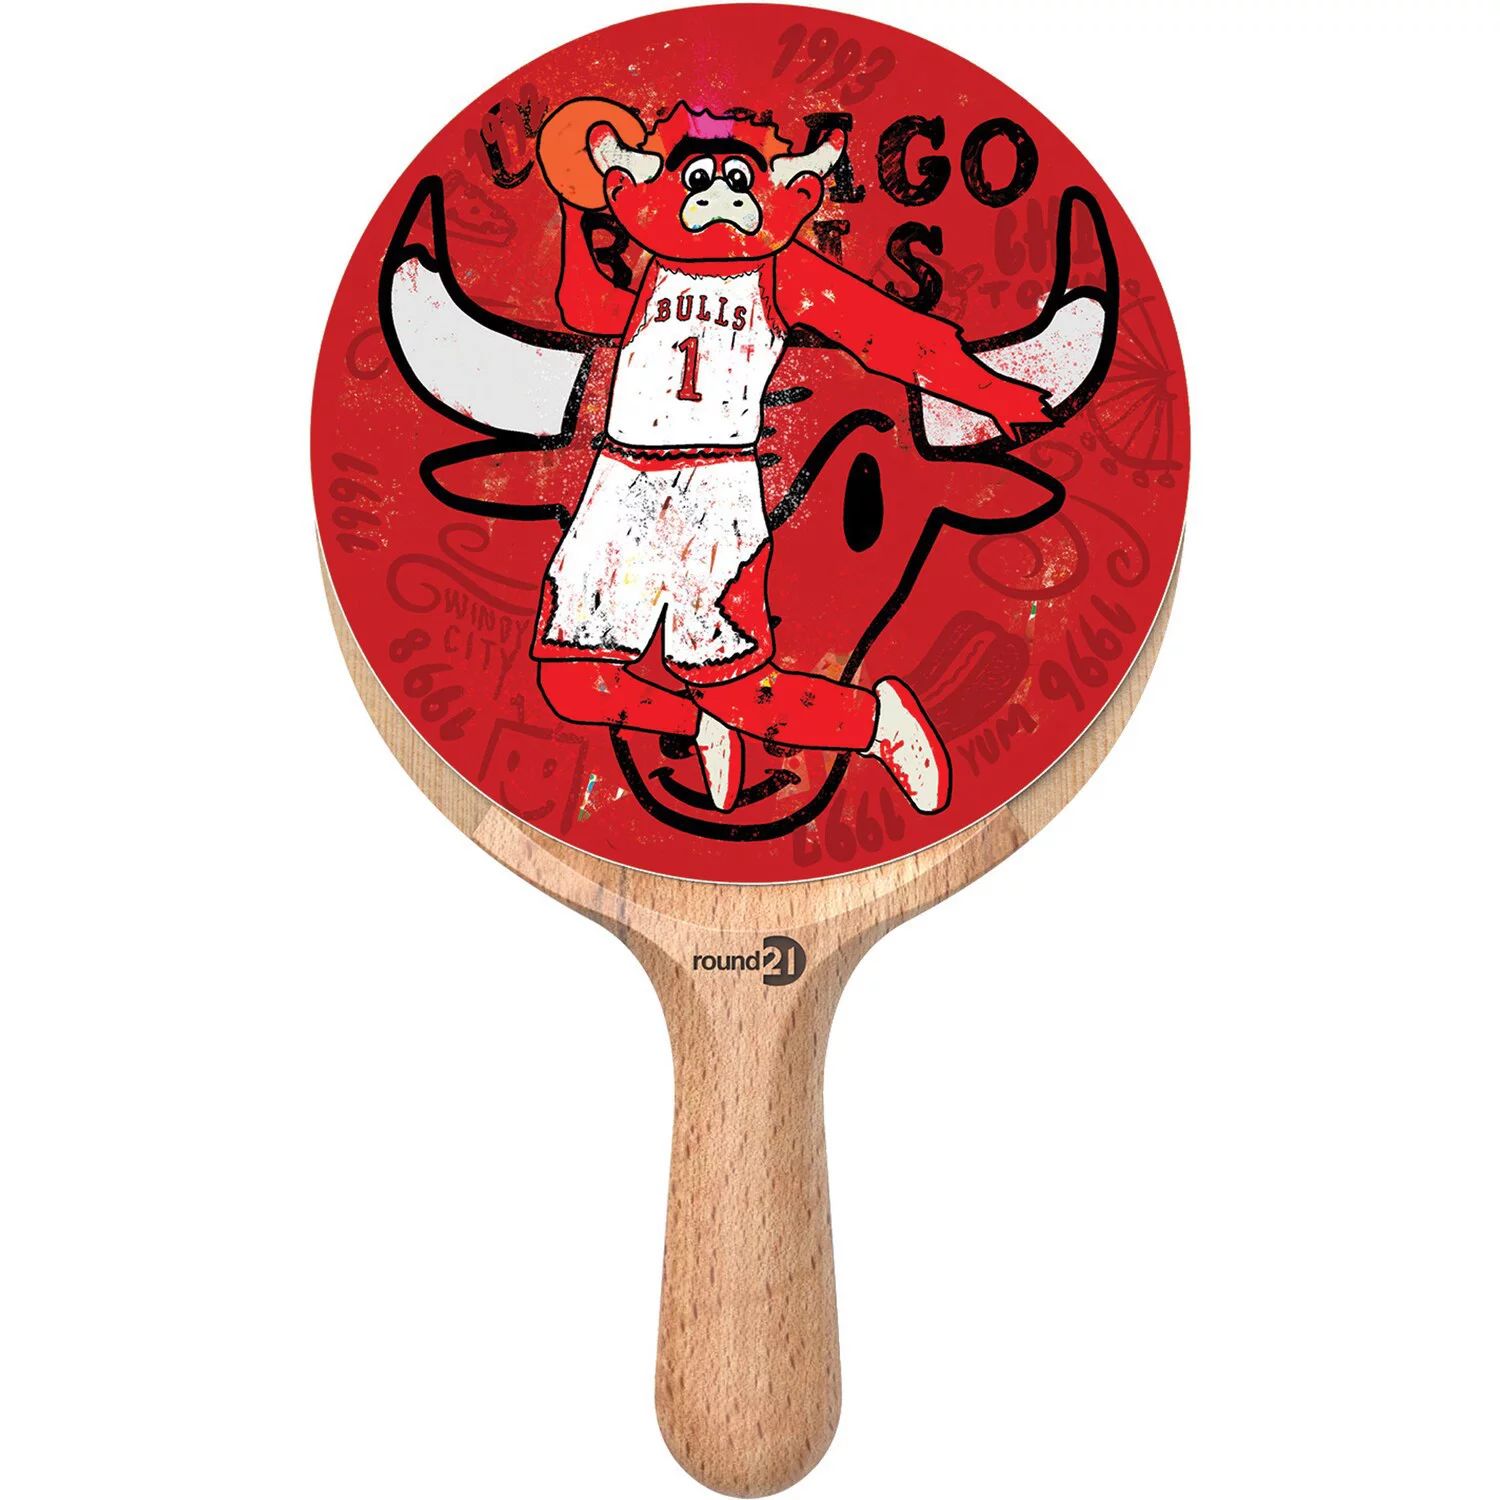 Ракетка для настольного тенниса Chicago Bulls Unbranded спортивный инвентарь atemi ракетка для настольного тенниса 400 an